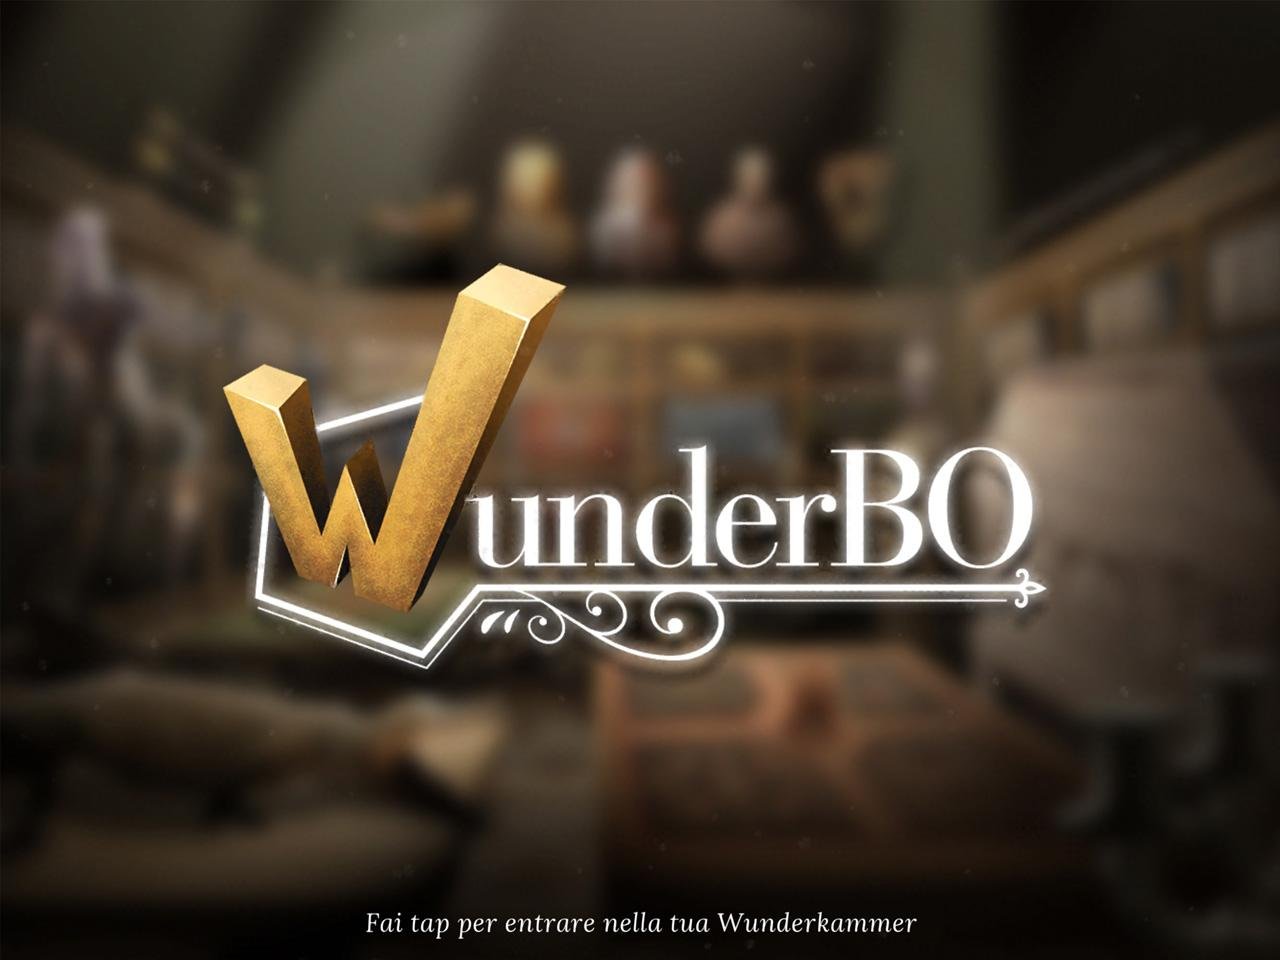 WunderBO, online il nuovo videogioco che promuove Bologna e i suoi musei